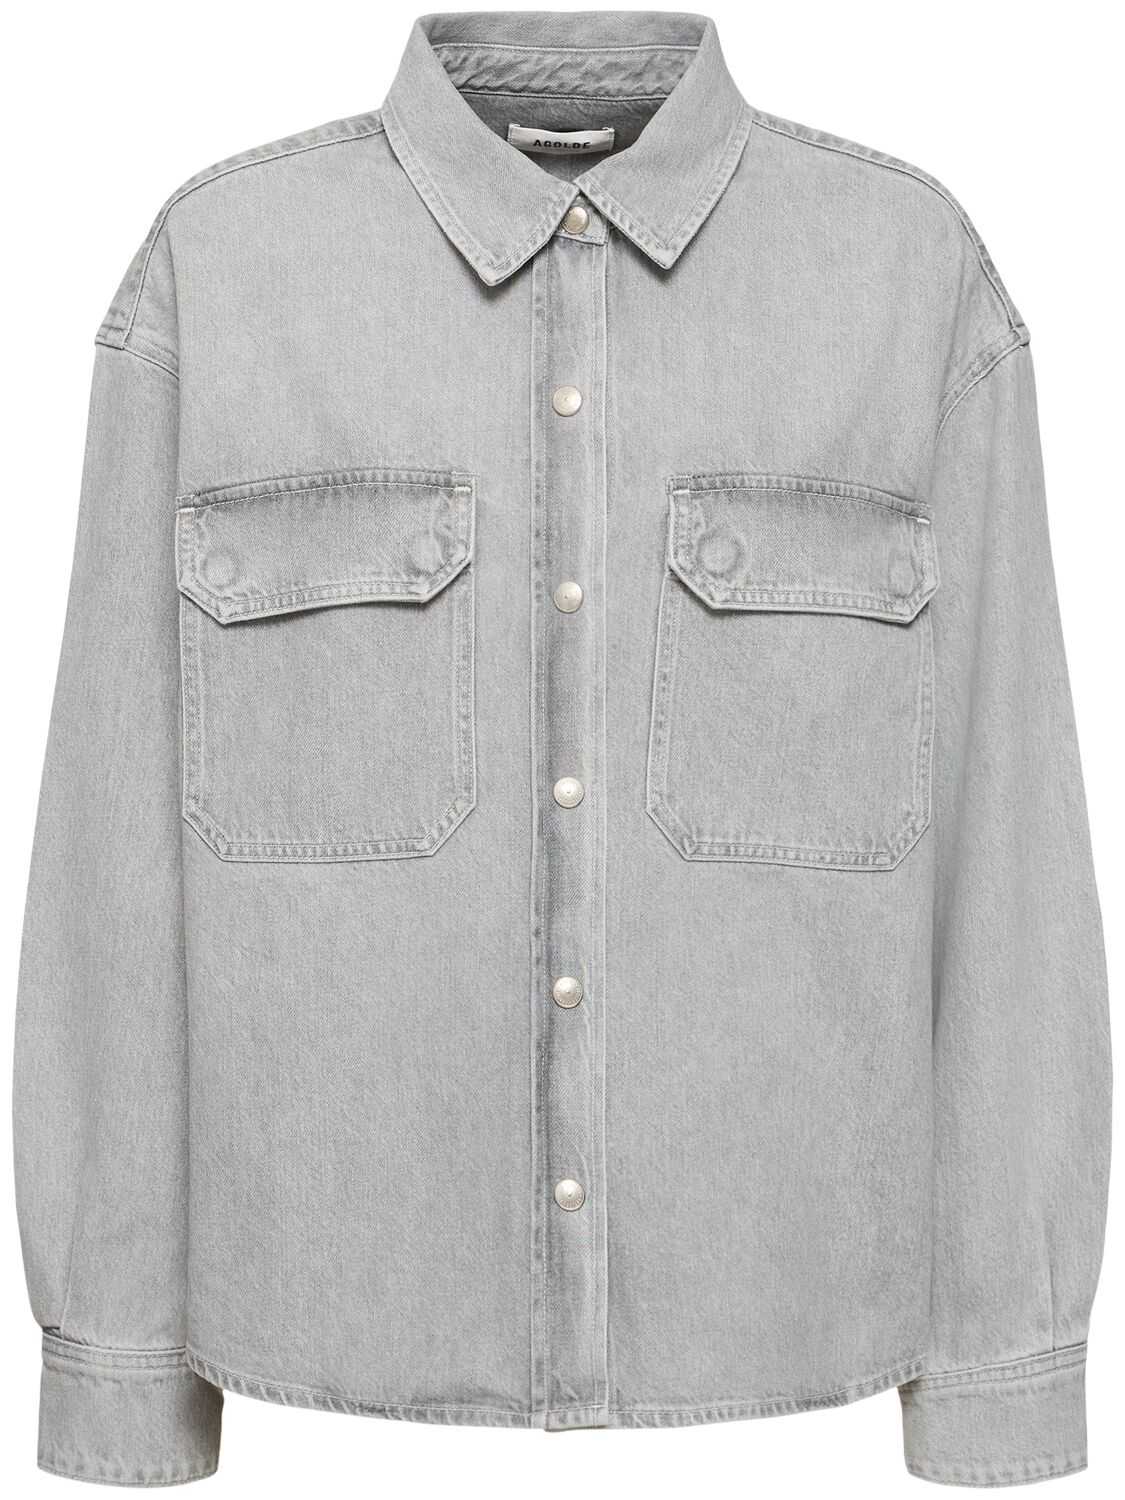 Agolde Gwen Slice Cotton Denim Shirt In Gray